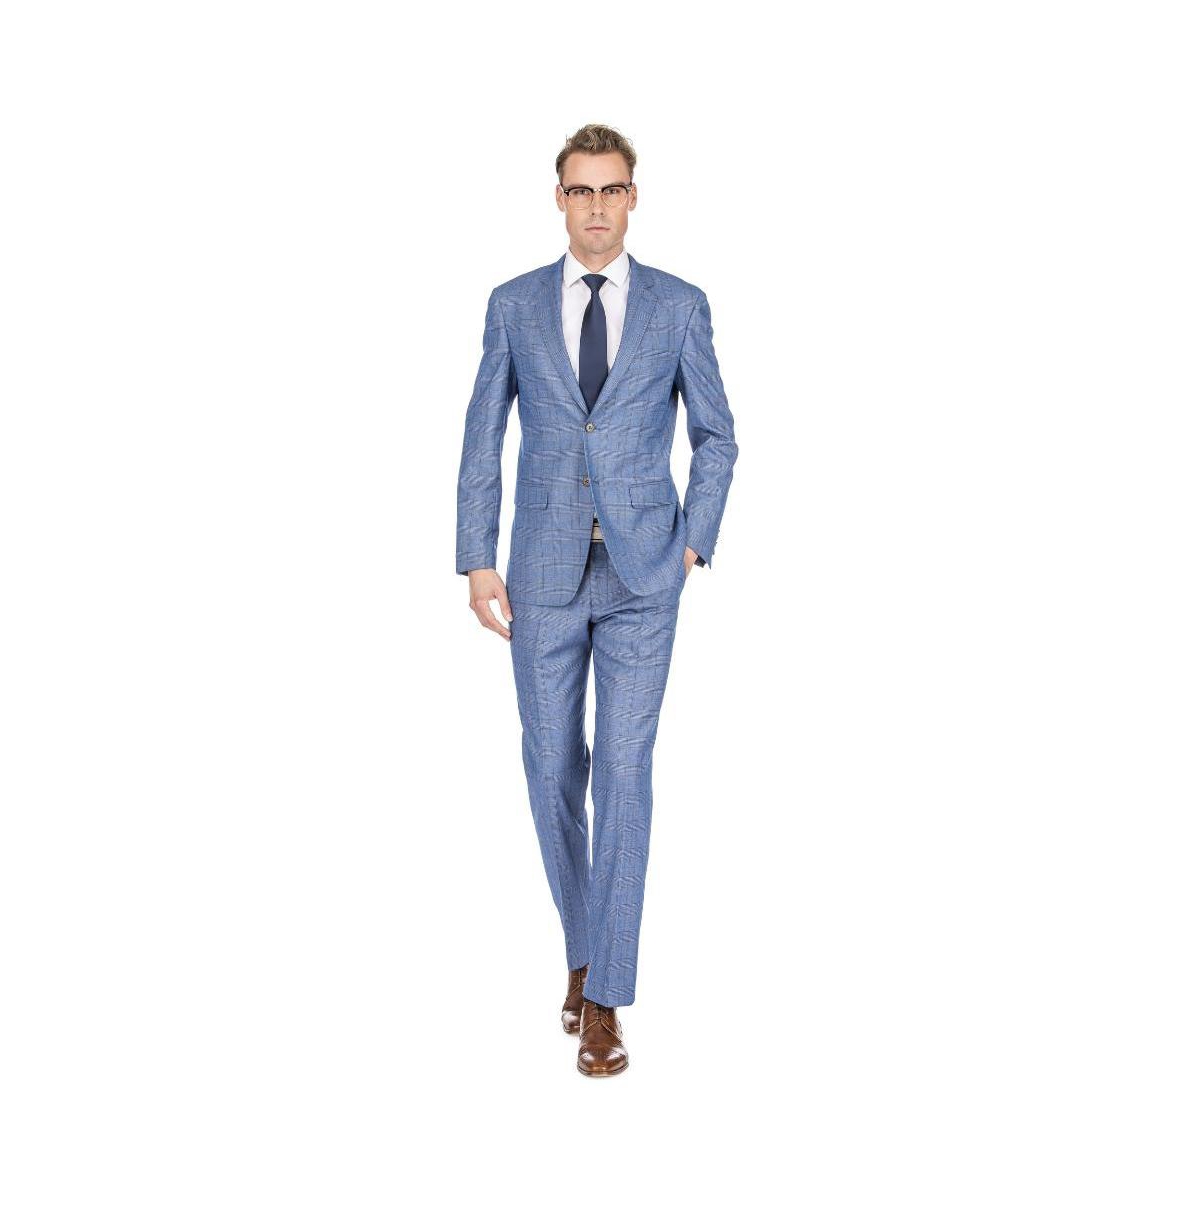 Brave man Men's Check Slim Fit Suits - Blue